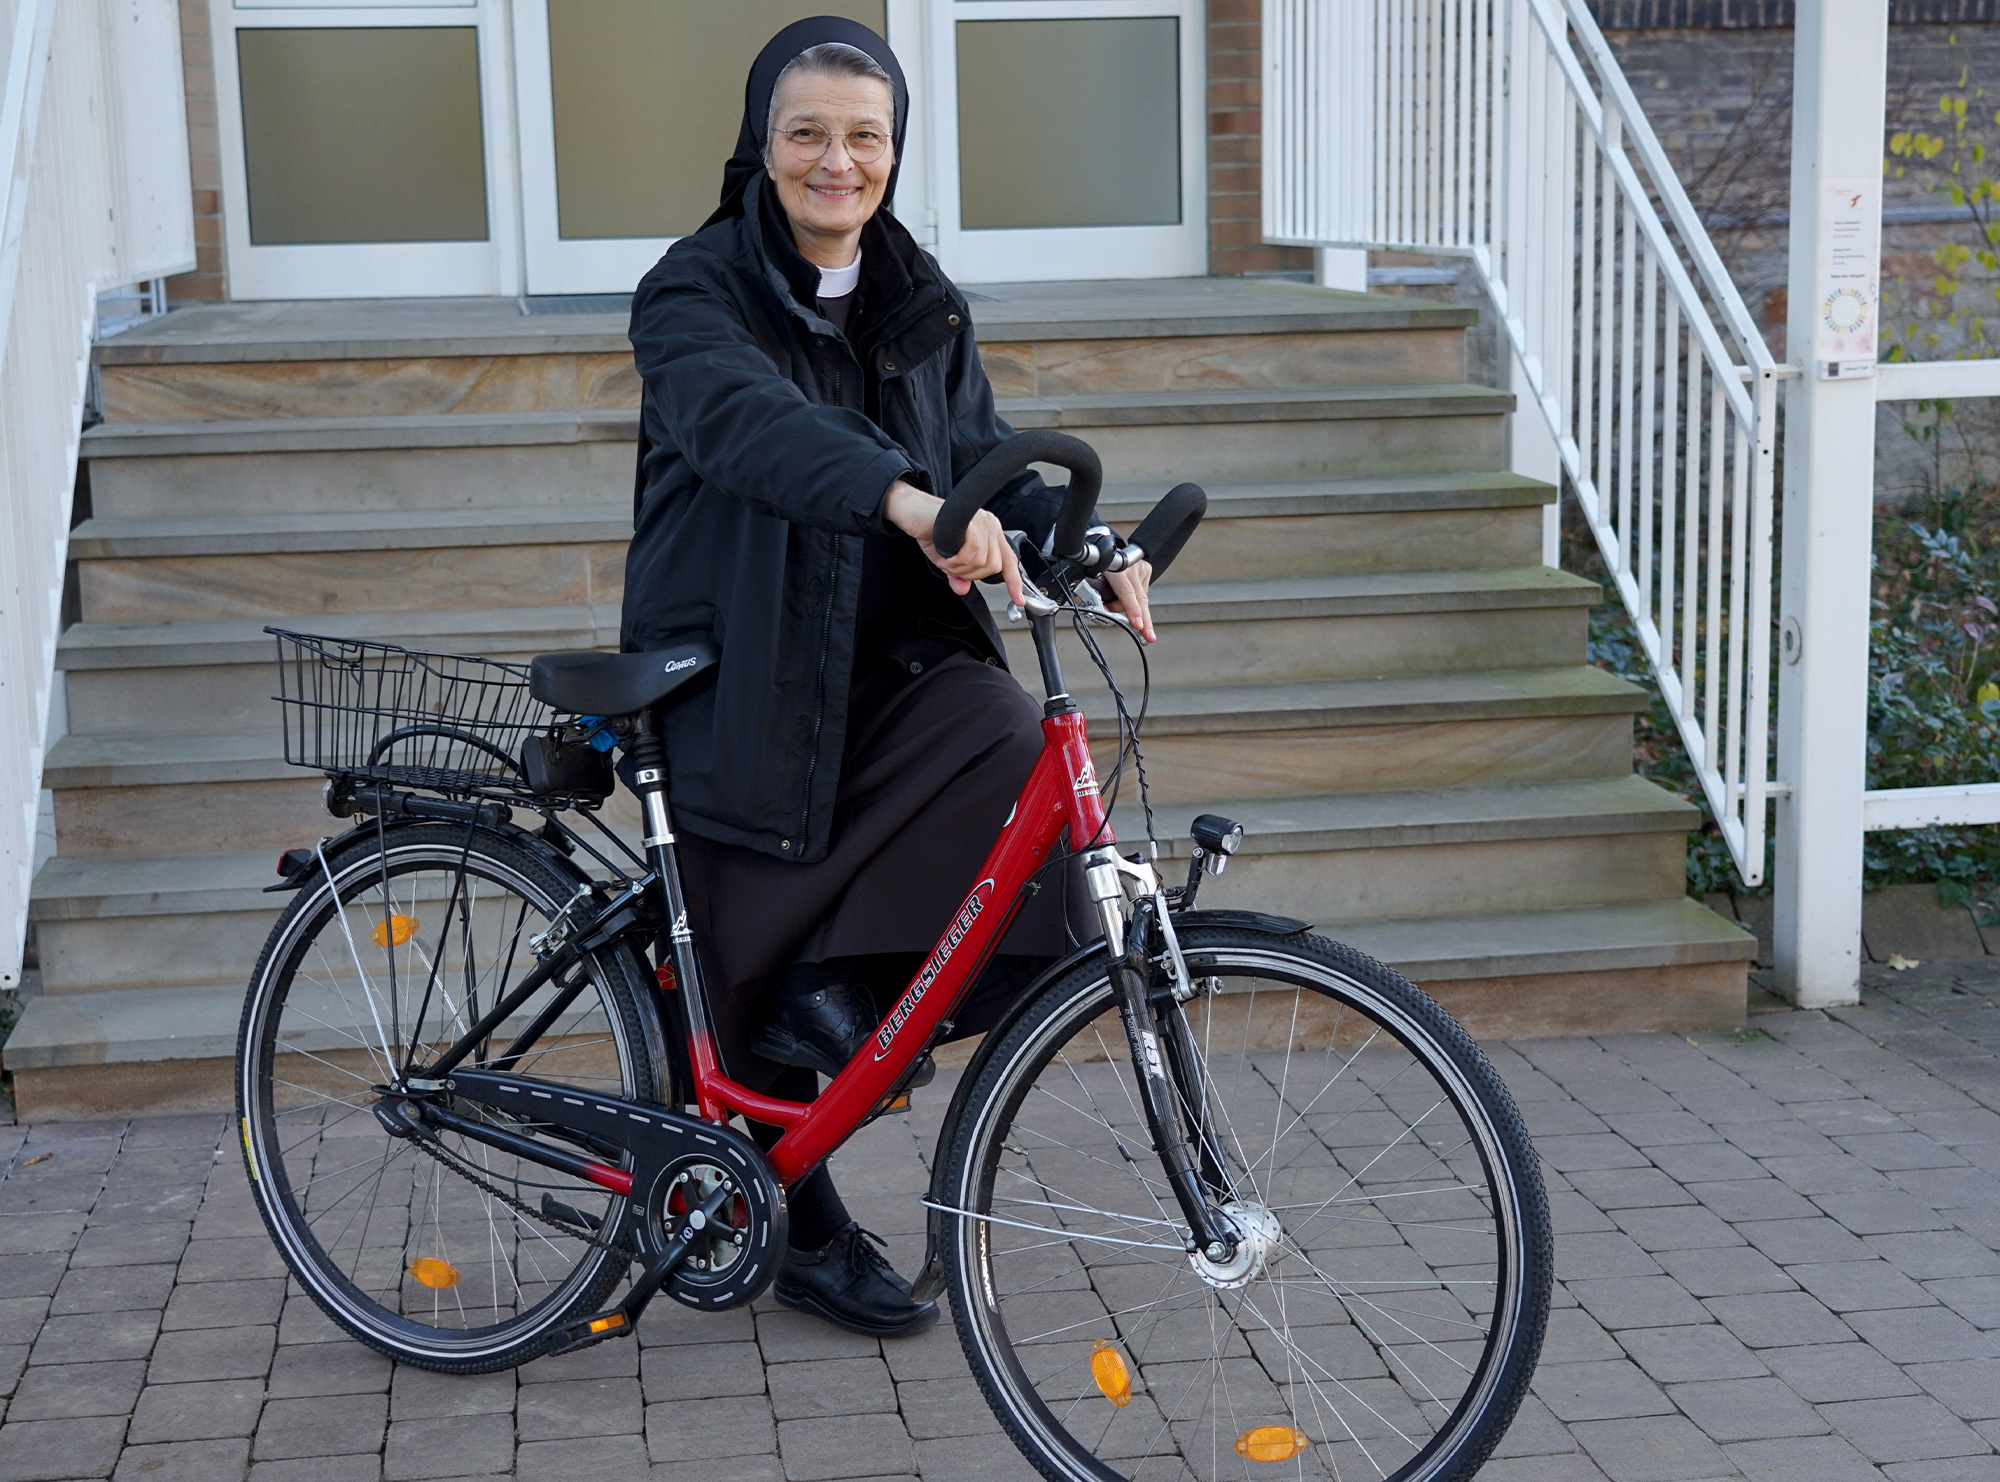 Ihren Arbeitsweg legt Schwester M. Johanna Harke gerne mit dem Fahrrad zurück. Foto: Michael Bodin / Erzbistum Paderborn